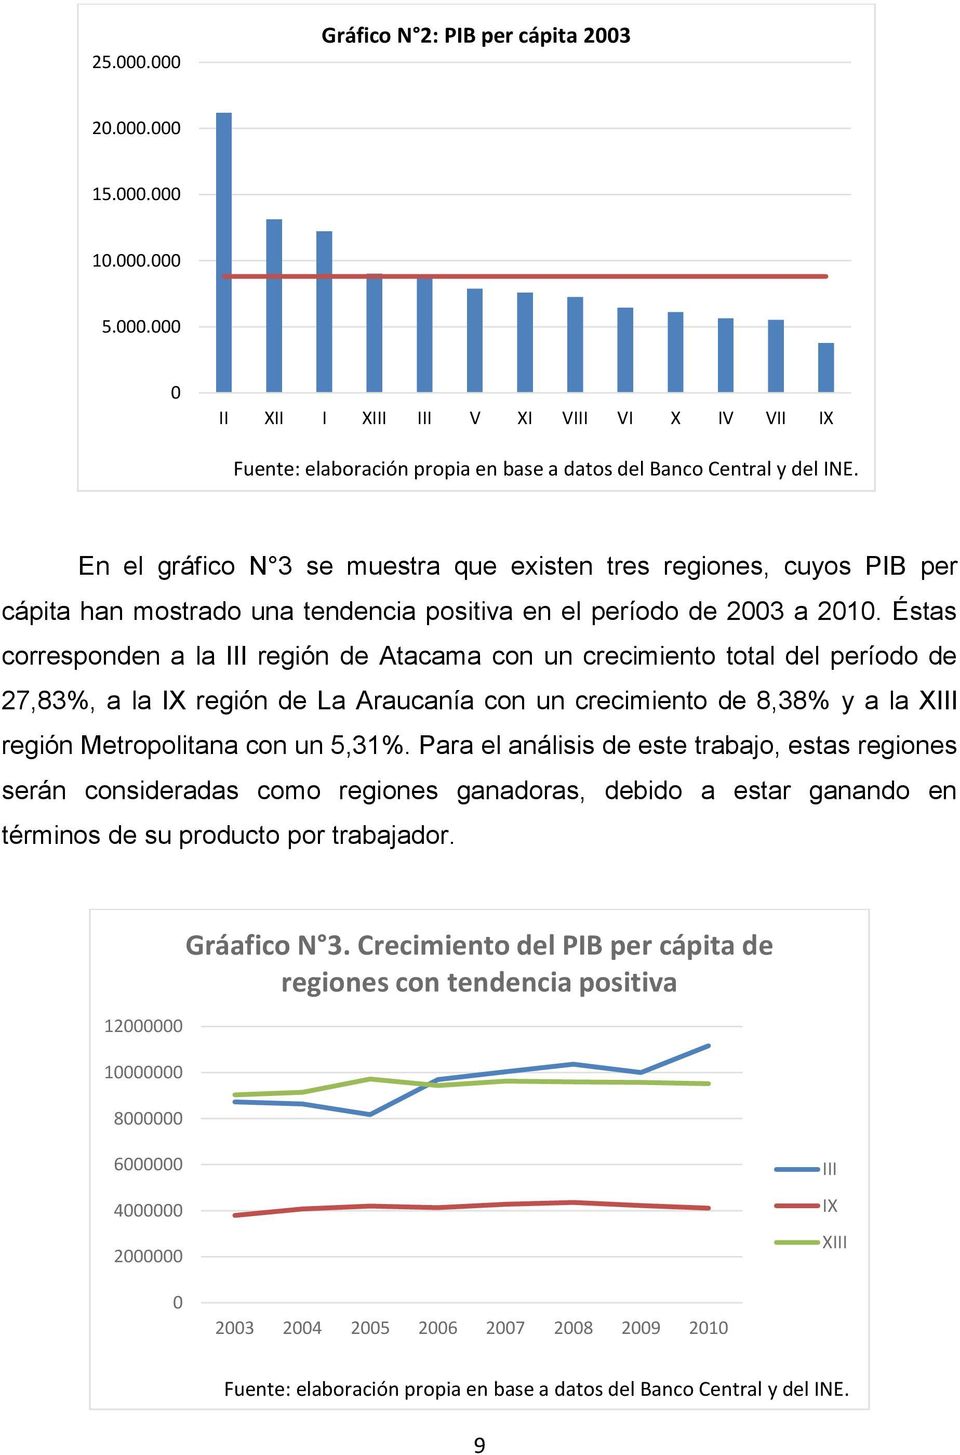 Éstas corresponden a la III región de Atacama con un crecimiento total del período de 27,83%, a la IX región de La Araucanía con un crecimiento de 8,38% y a la XIII región Metropolitana con un 5,31%.